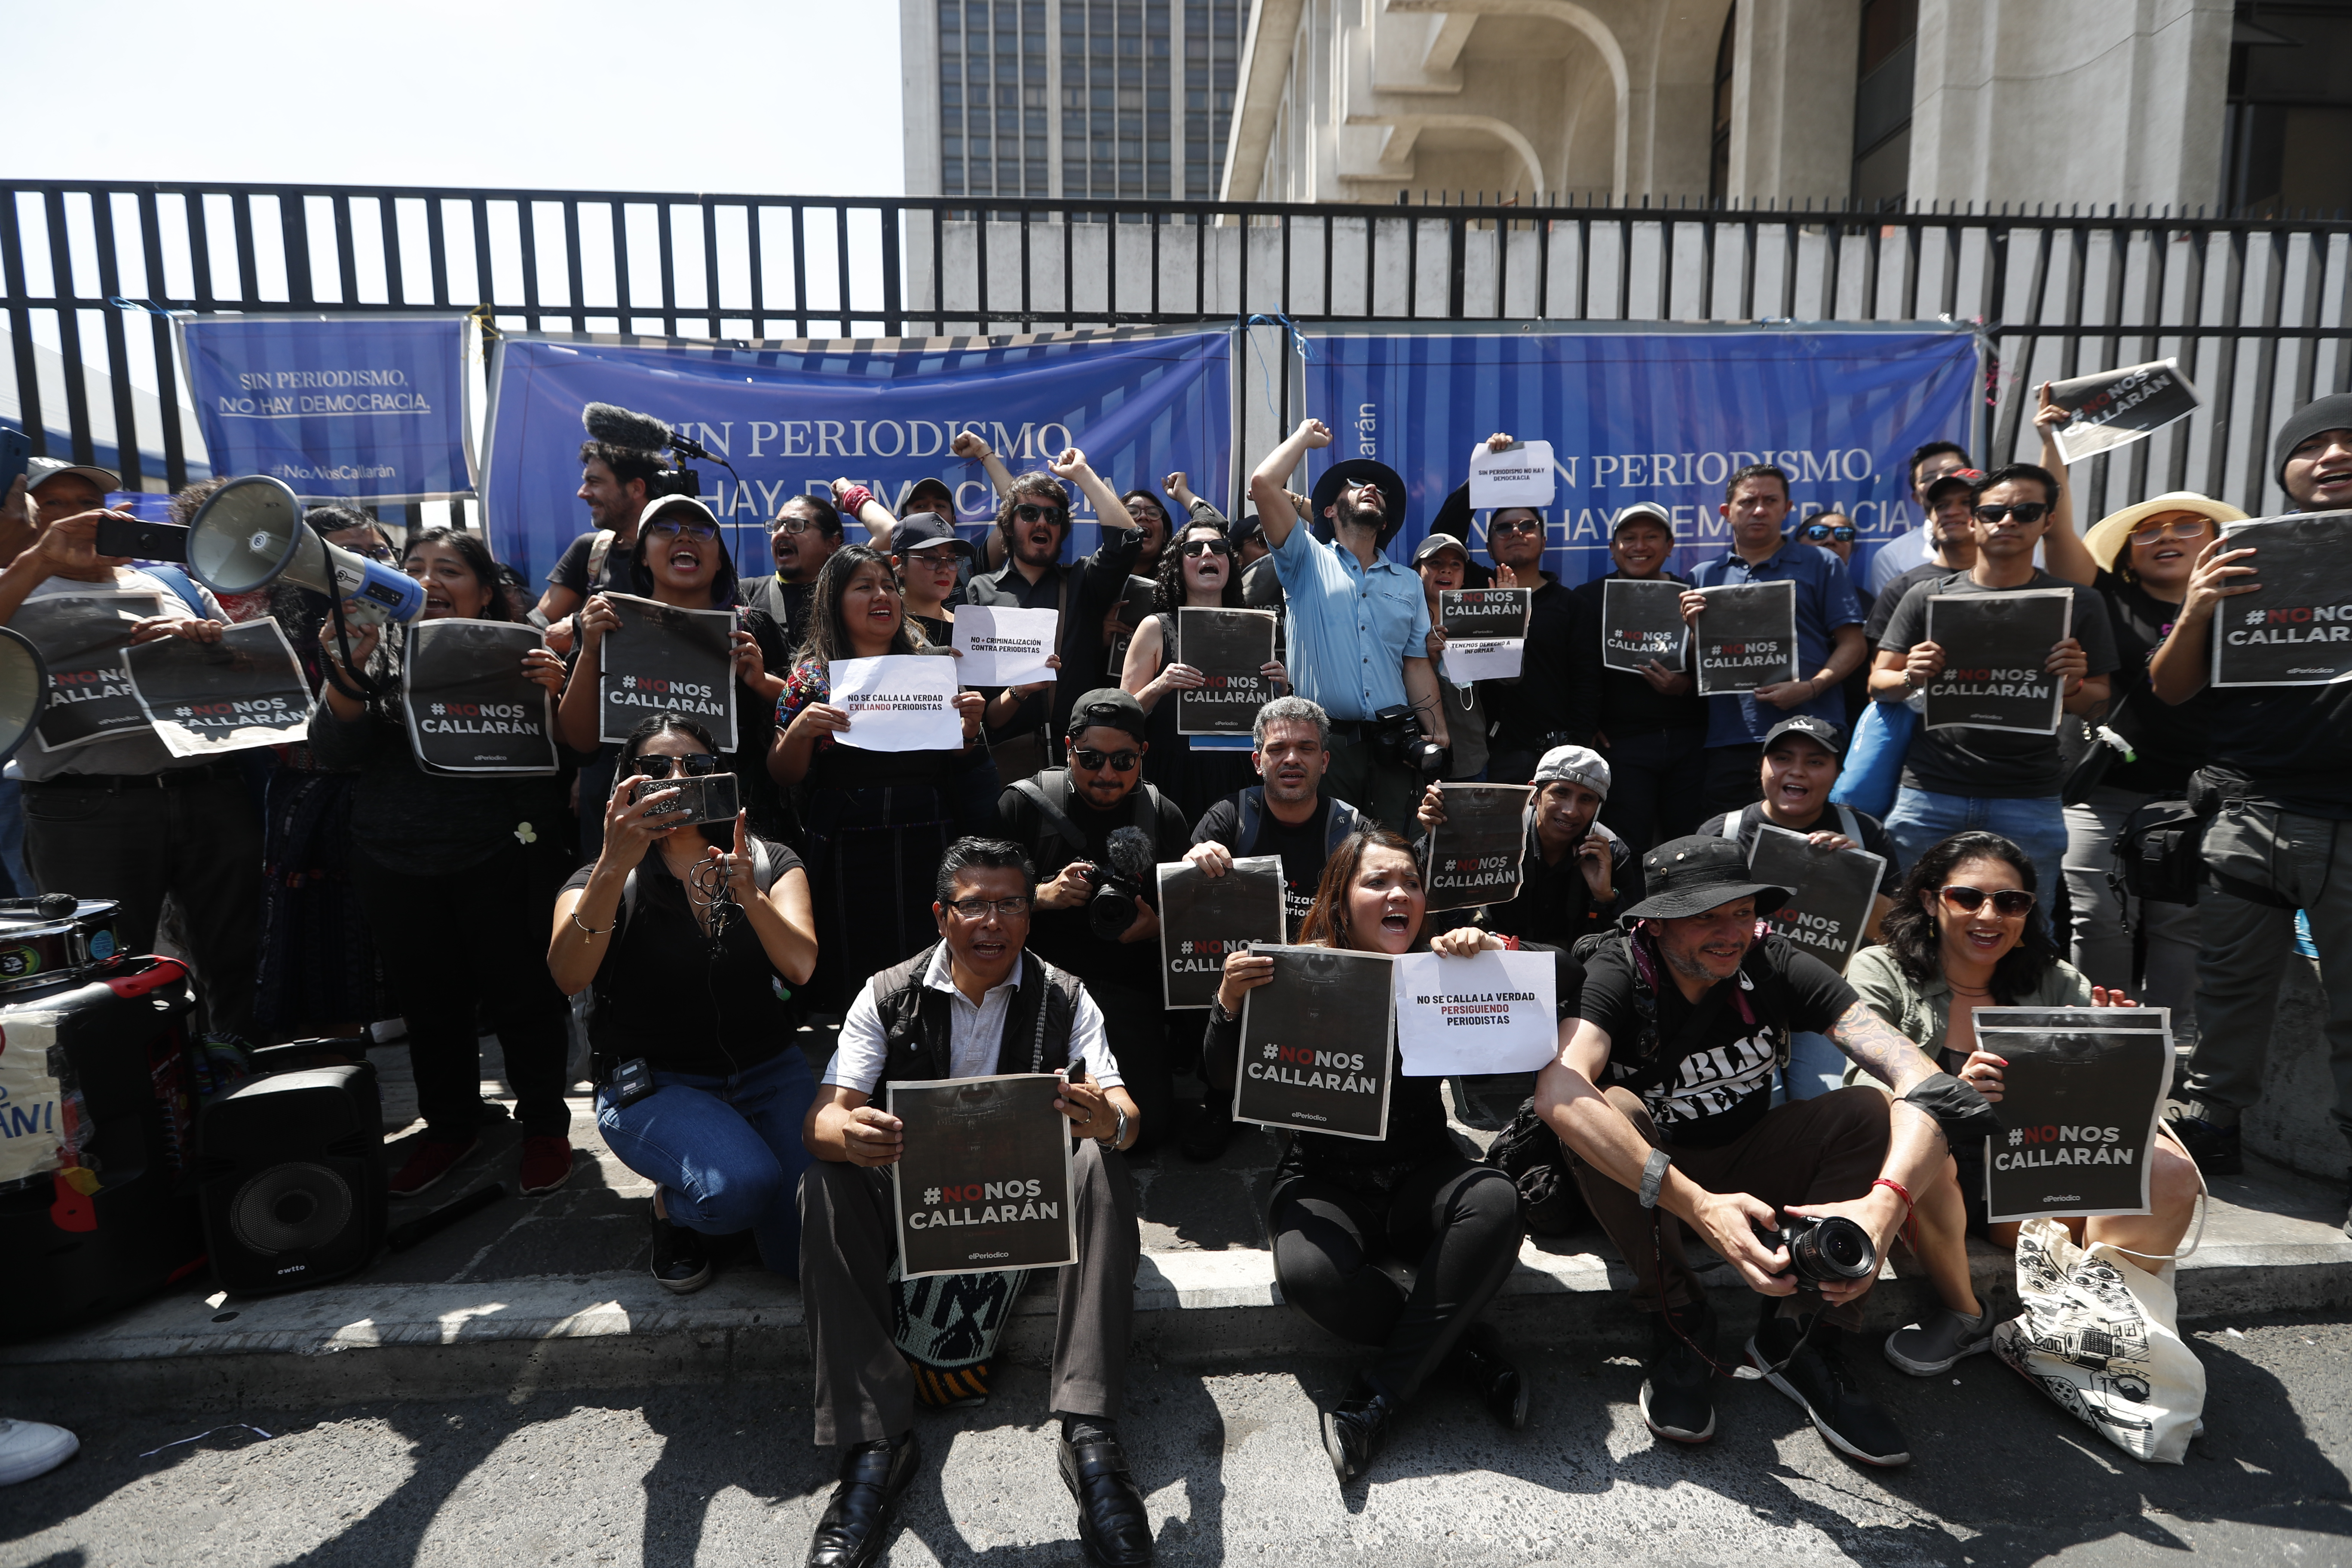 Periodistas y activistas protestan contra la censura y la persecución a periodistas en Guatemala.

Fotografía Prensa Libre: María José Bonilla
Fecha: 04/03/2023